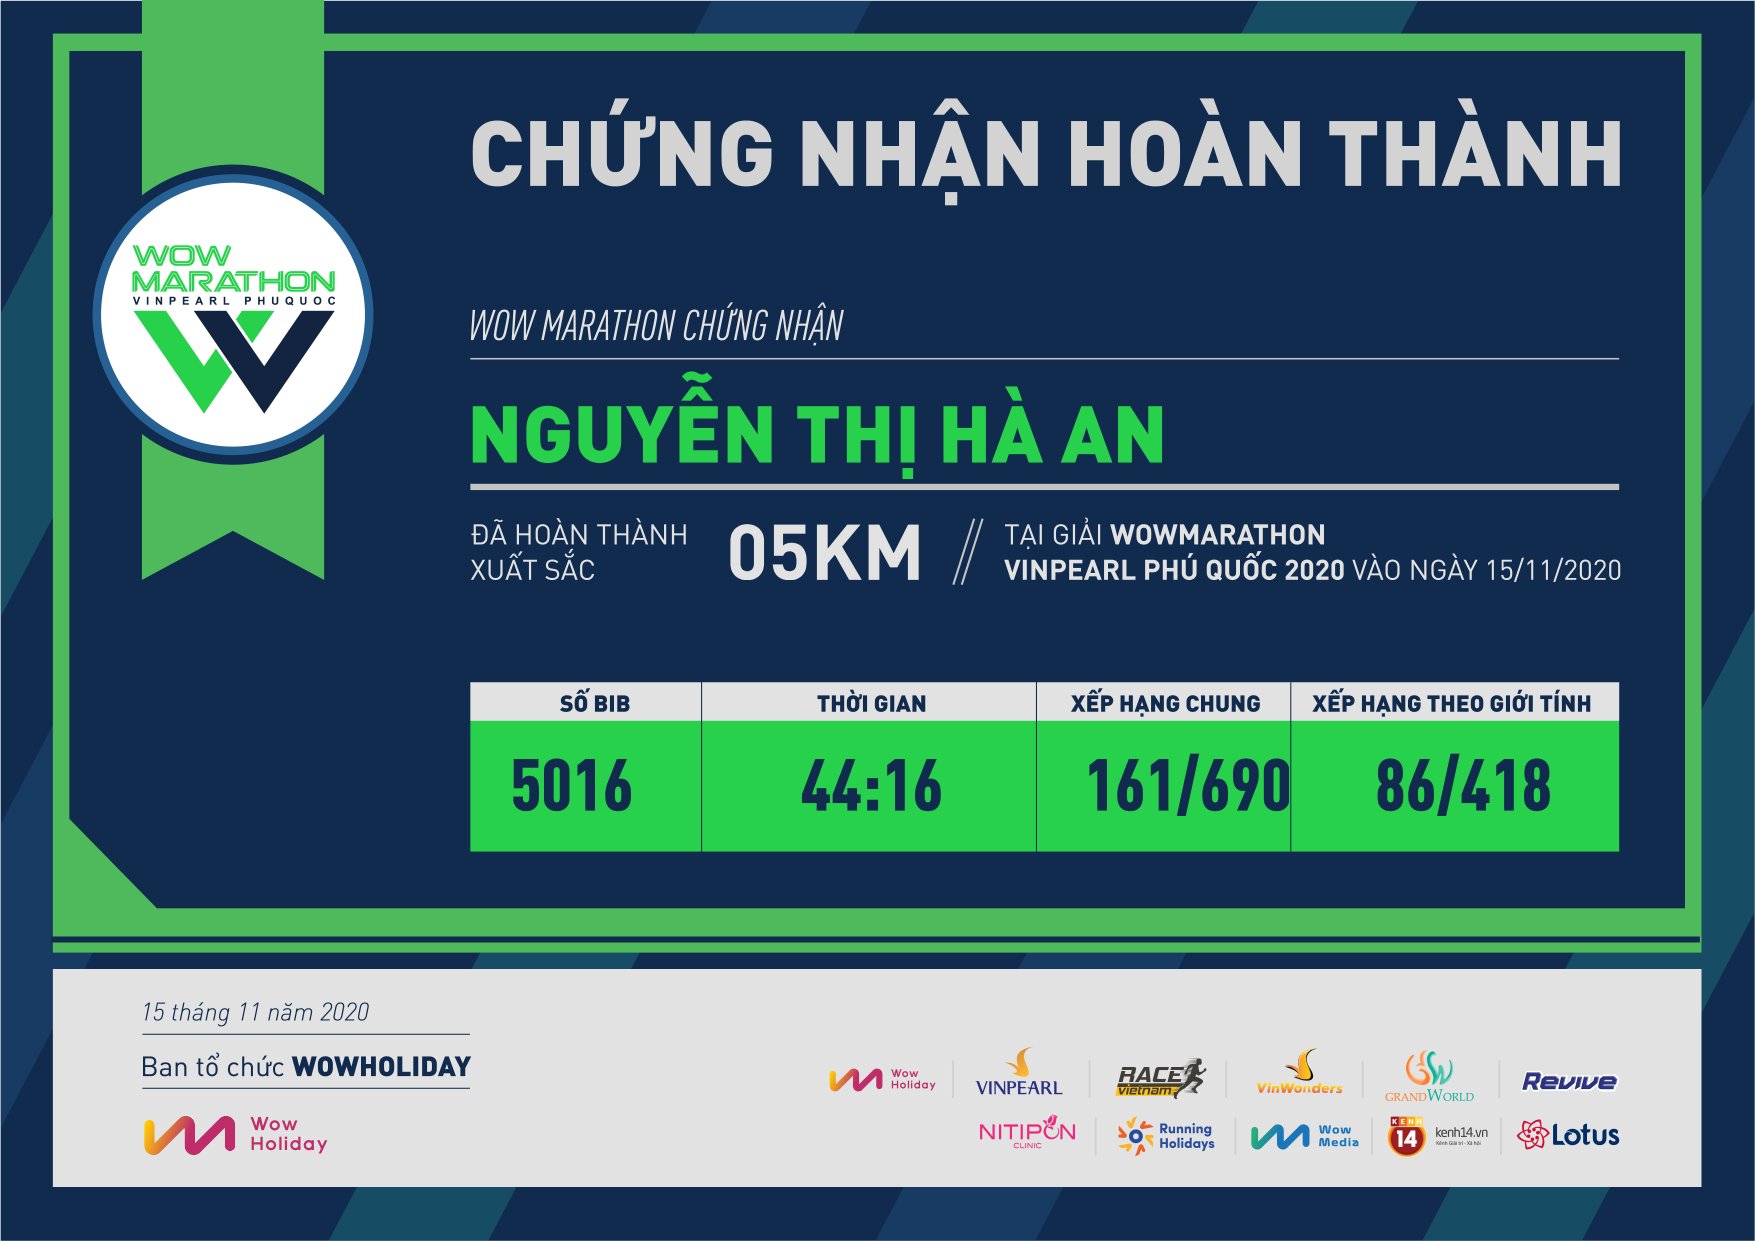 5016 - Nguyễn Thị Hà An